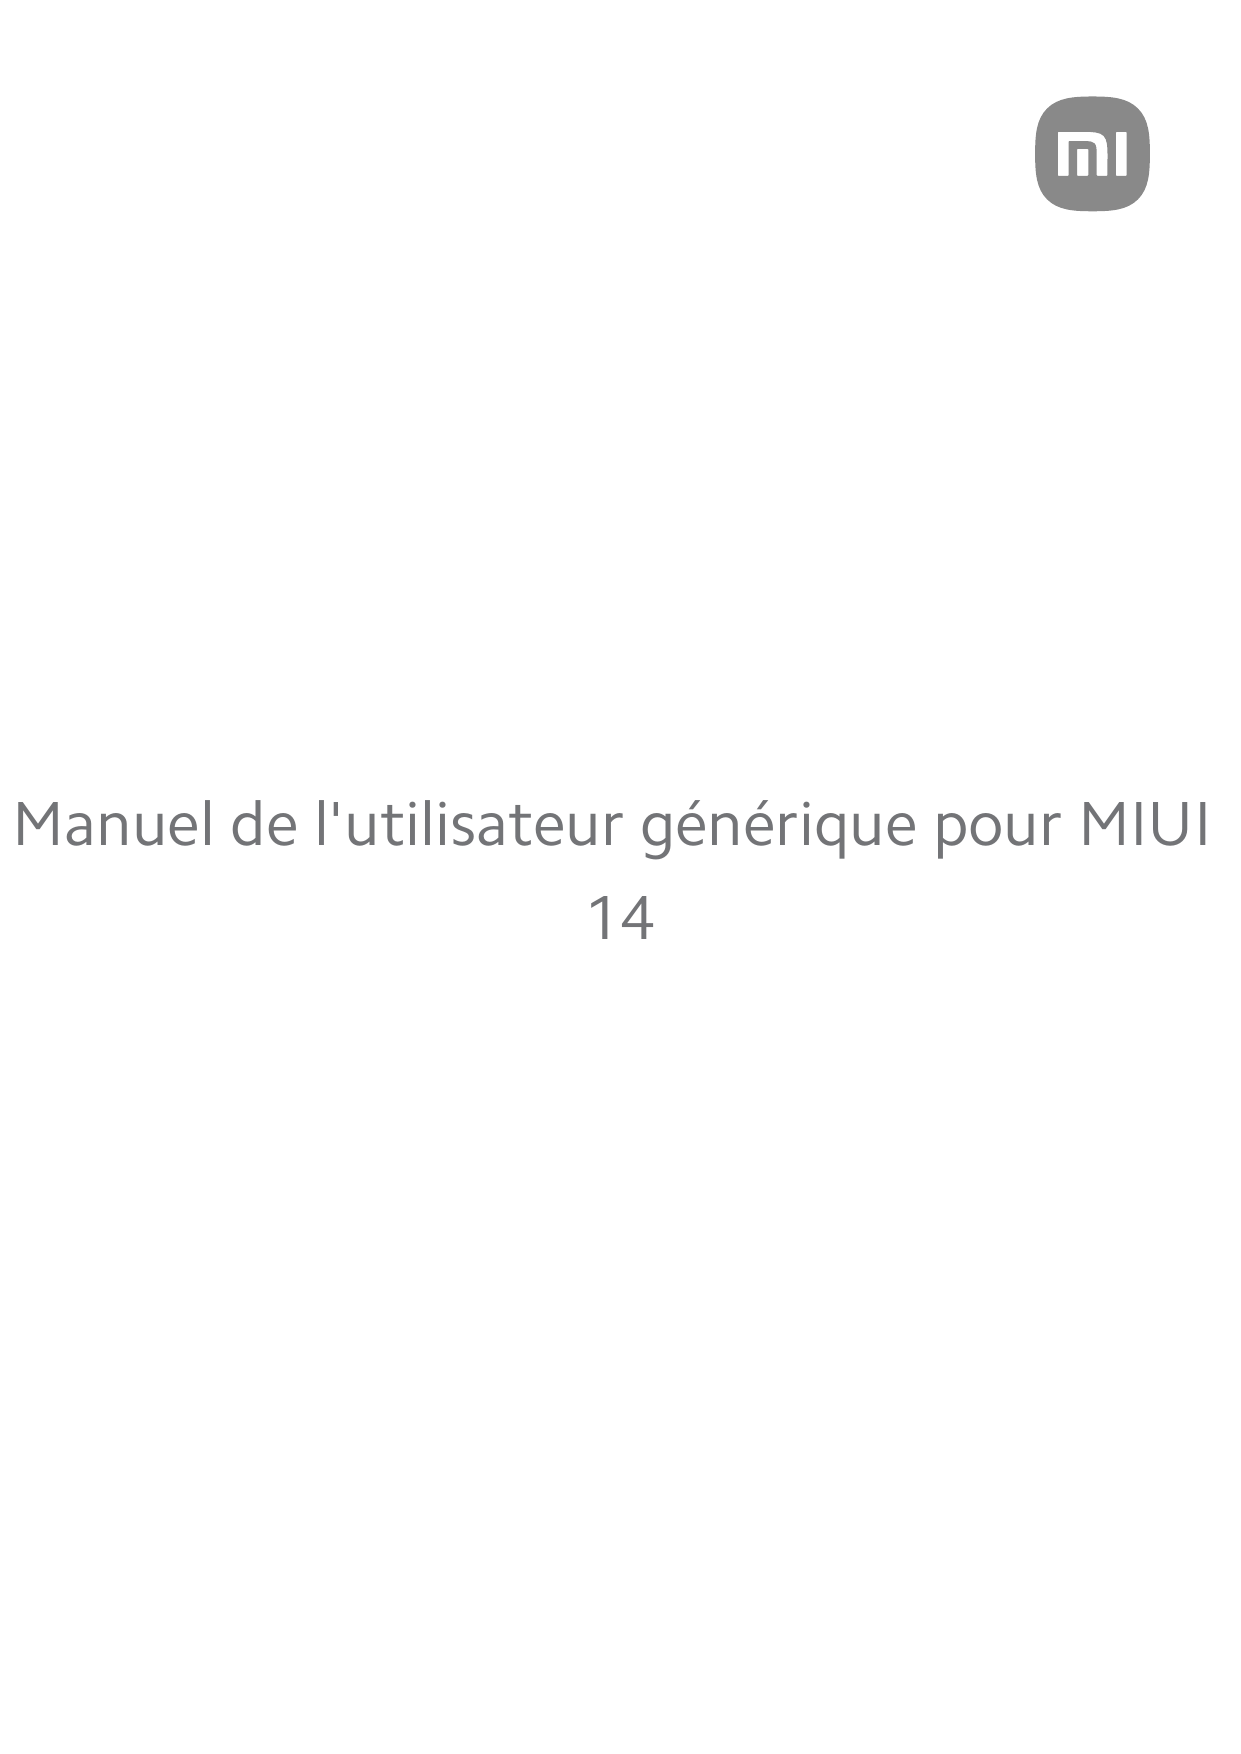 Manuel de l'utilisateur générique pour MIUI14